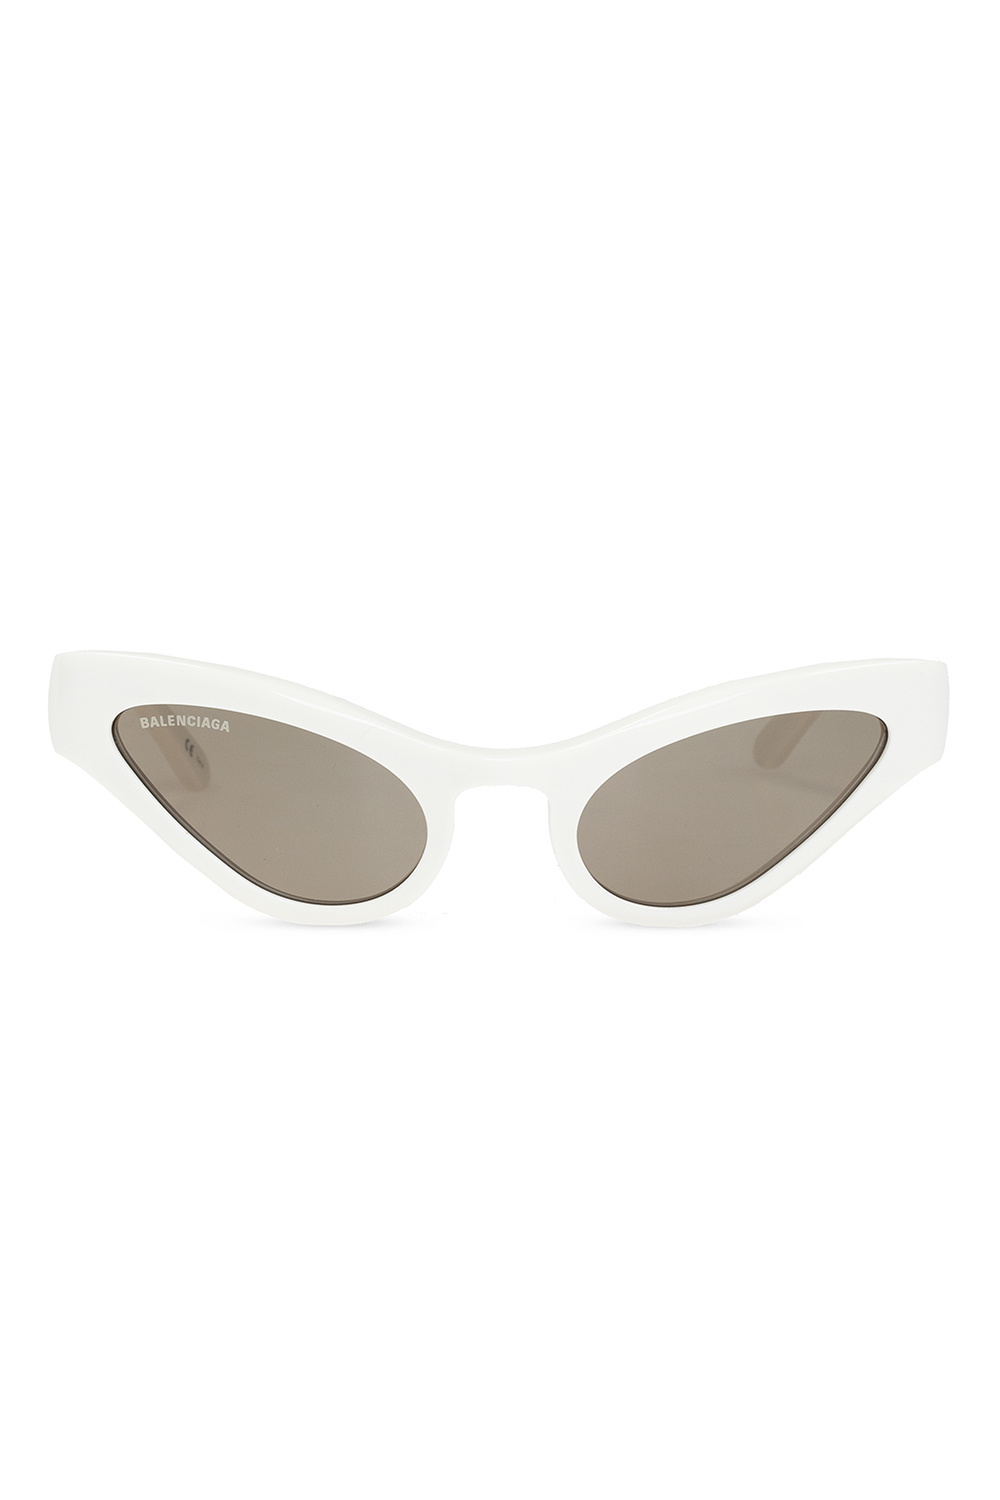 Balenciaga sunglasses ray ban new caravan 0rb3636 9196g5 legend gold